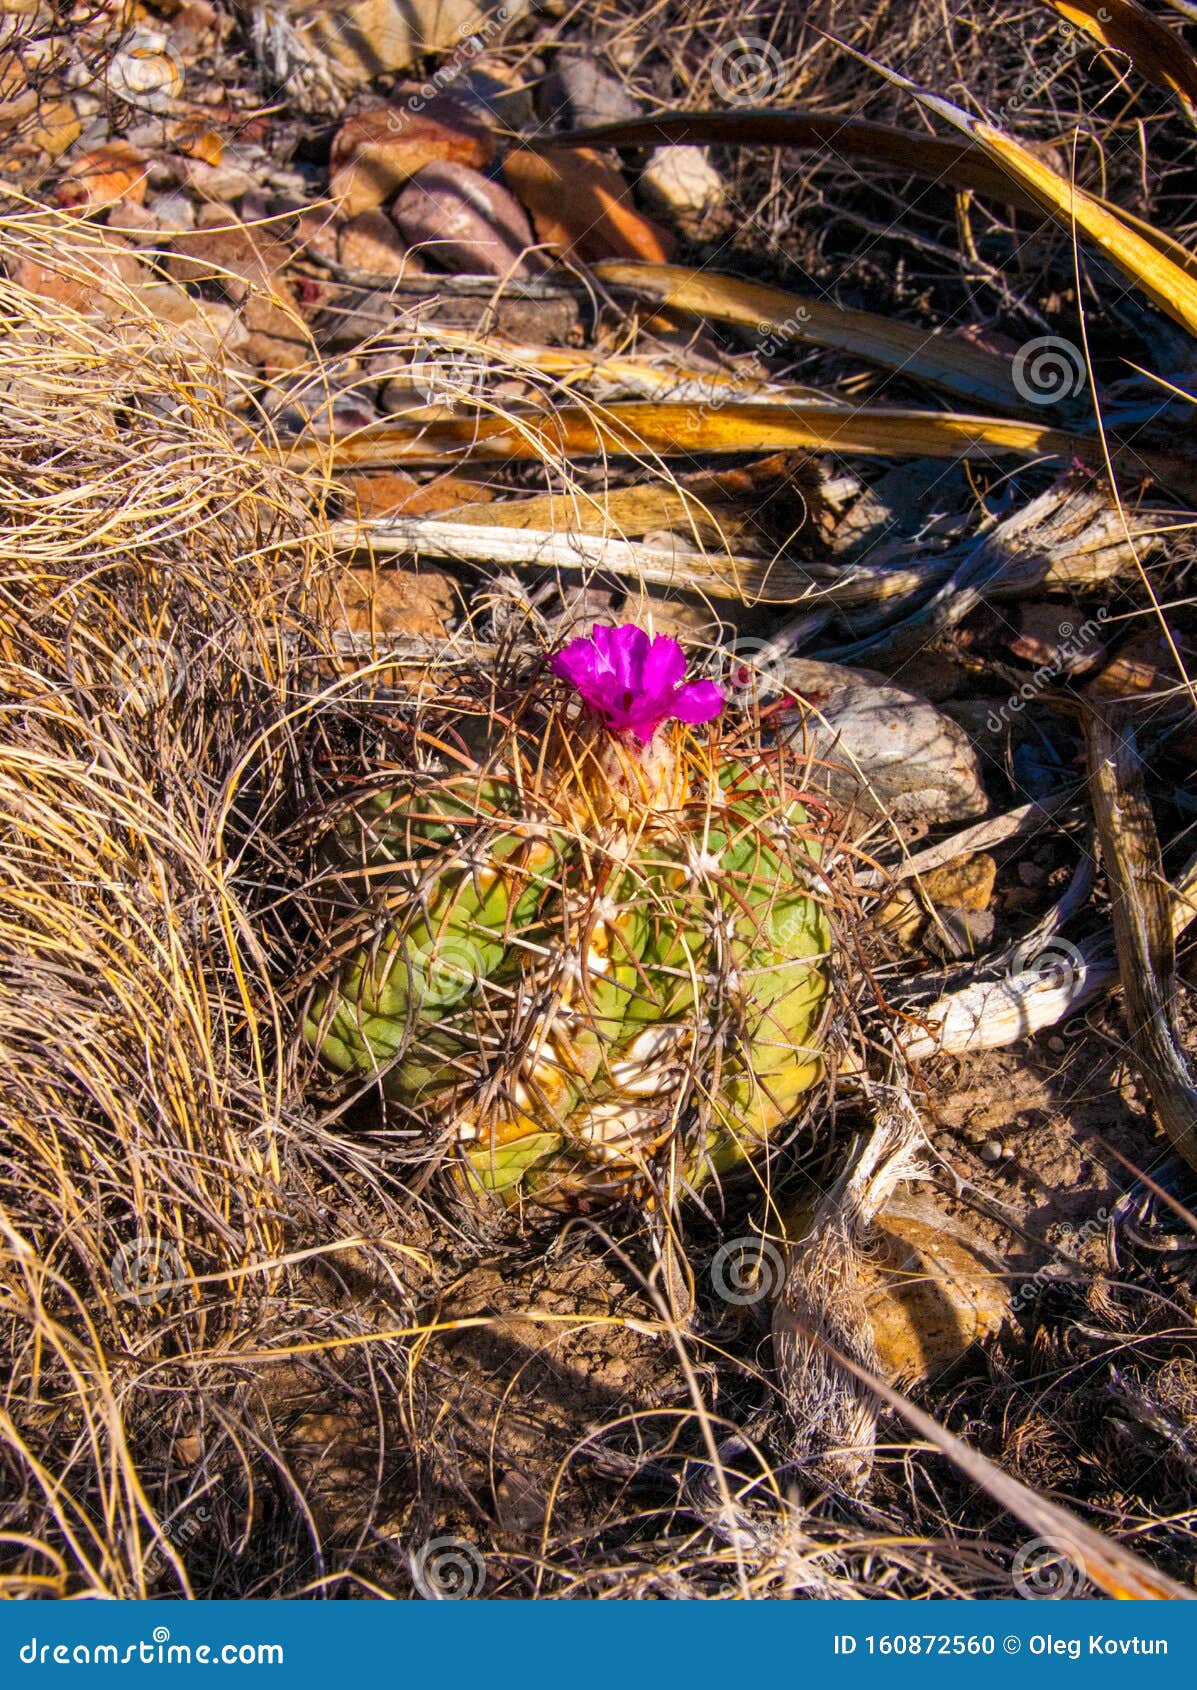 flower echinocactus horizonthalonius, turk`s head cactus in the texas desert